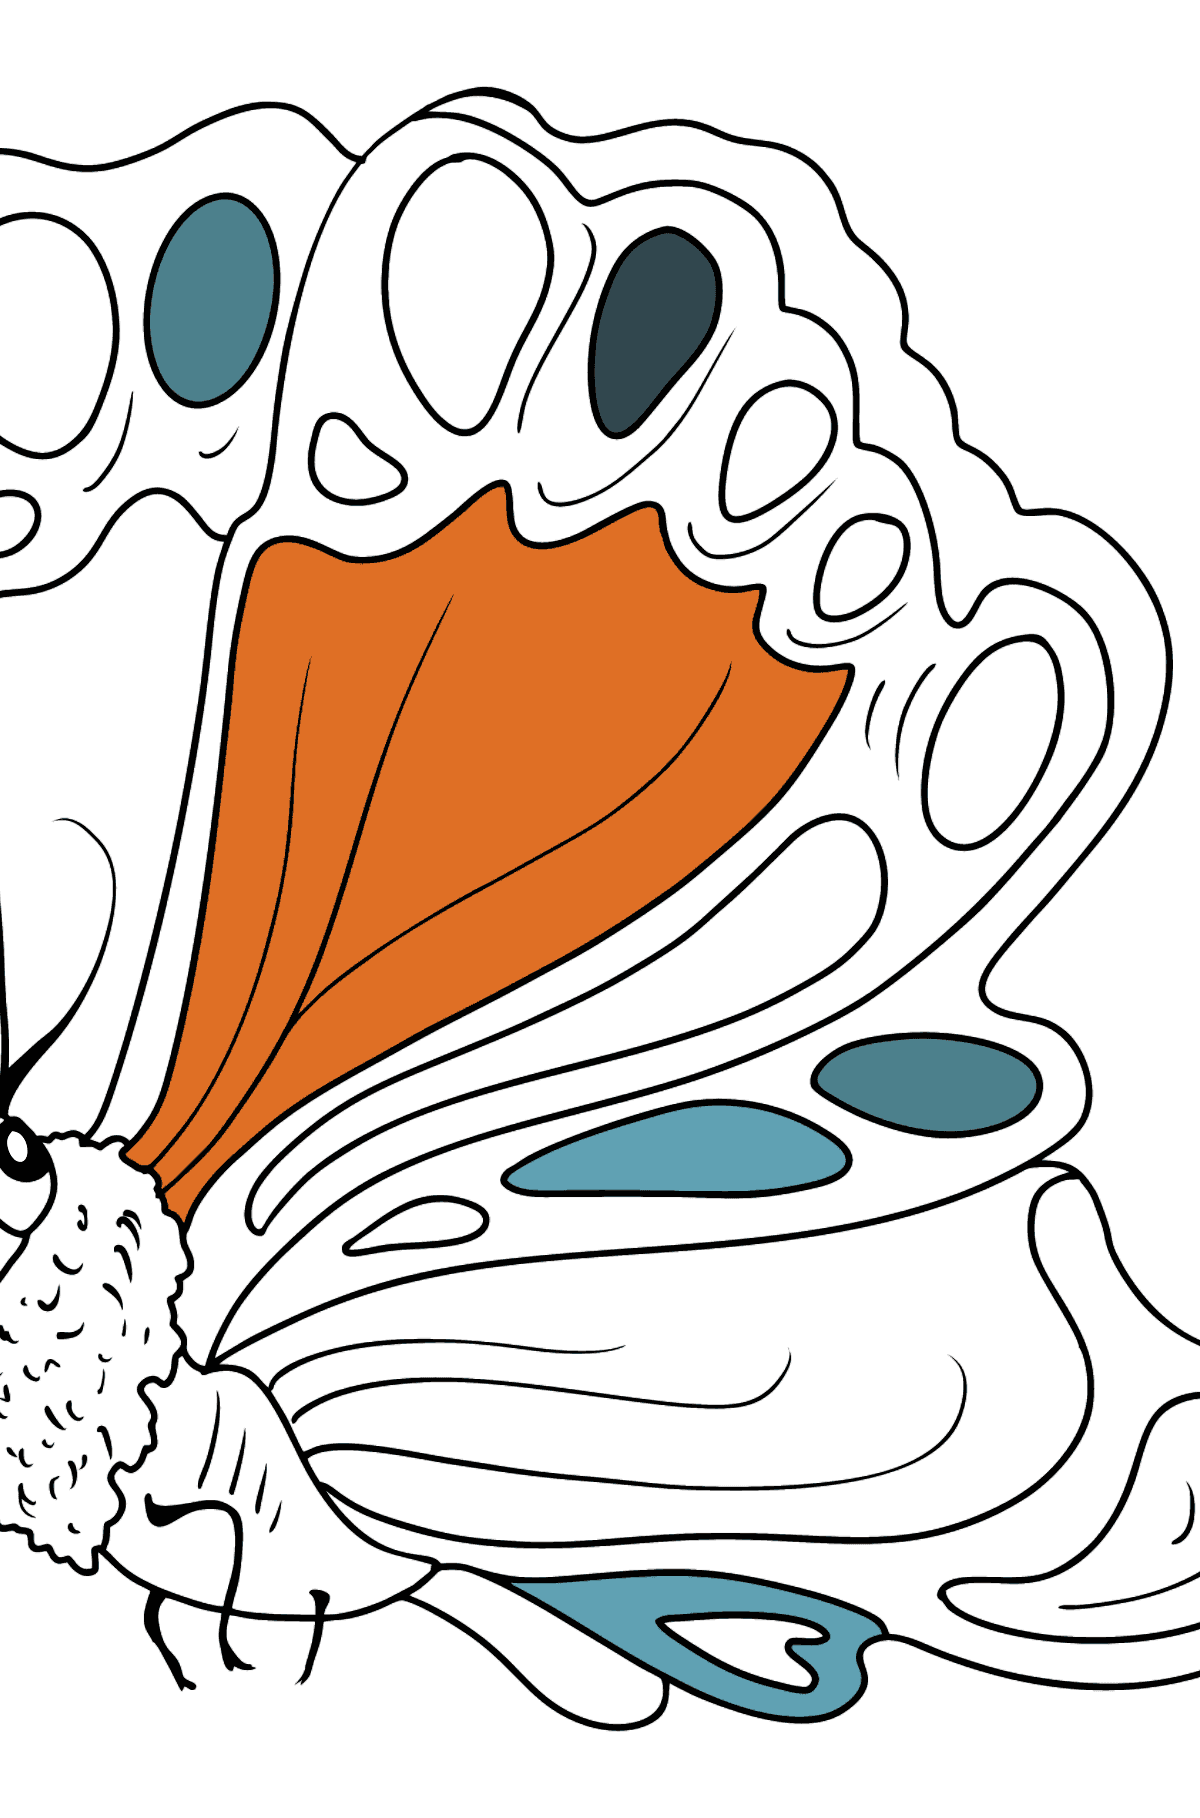 Desen de colorat fluture lateral - Desene de colorat pentru copii